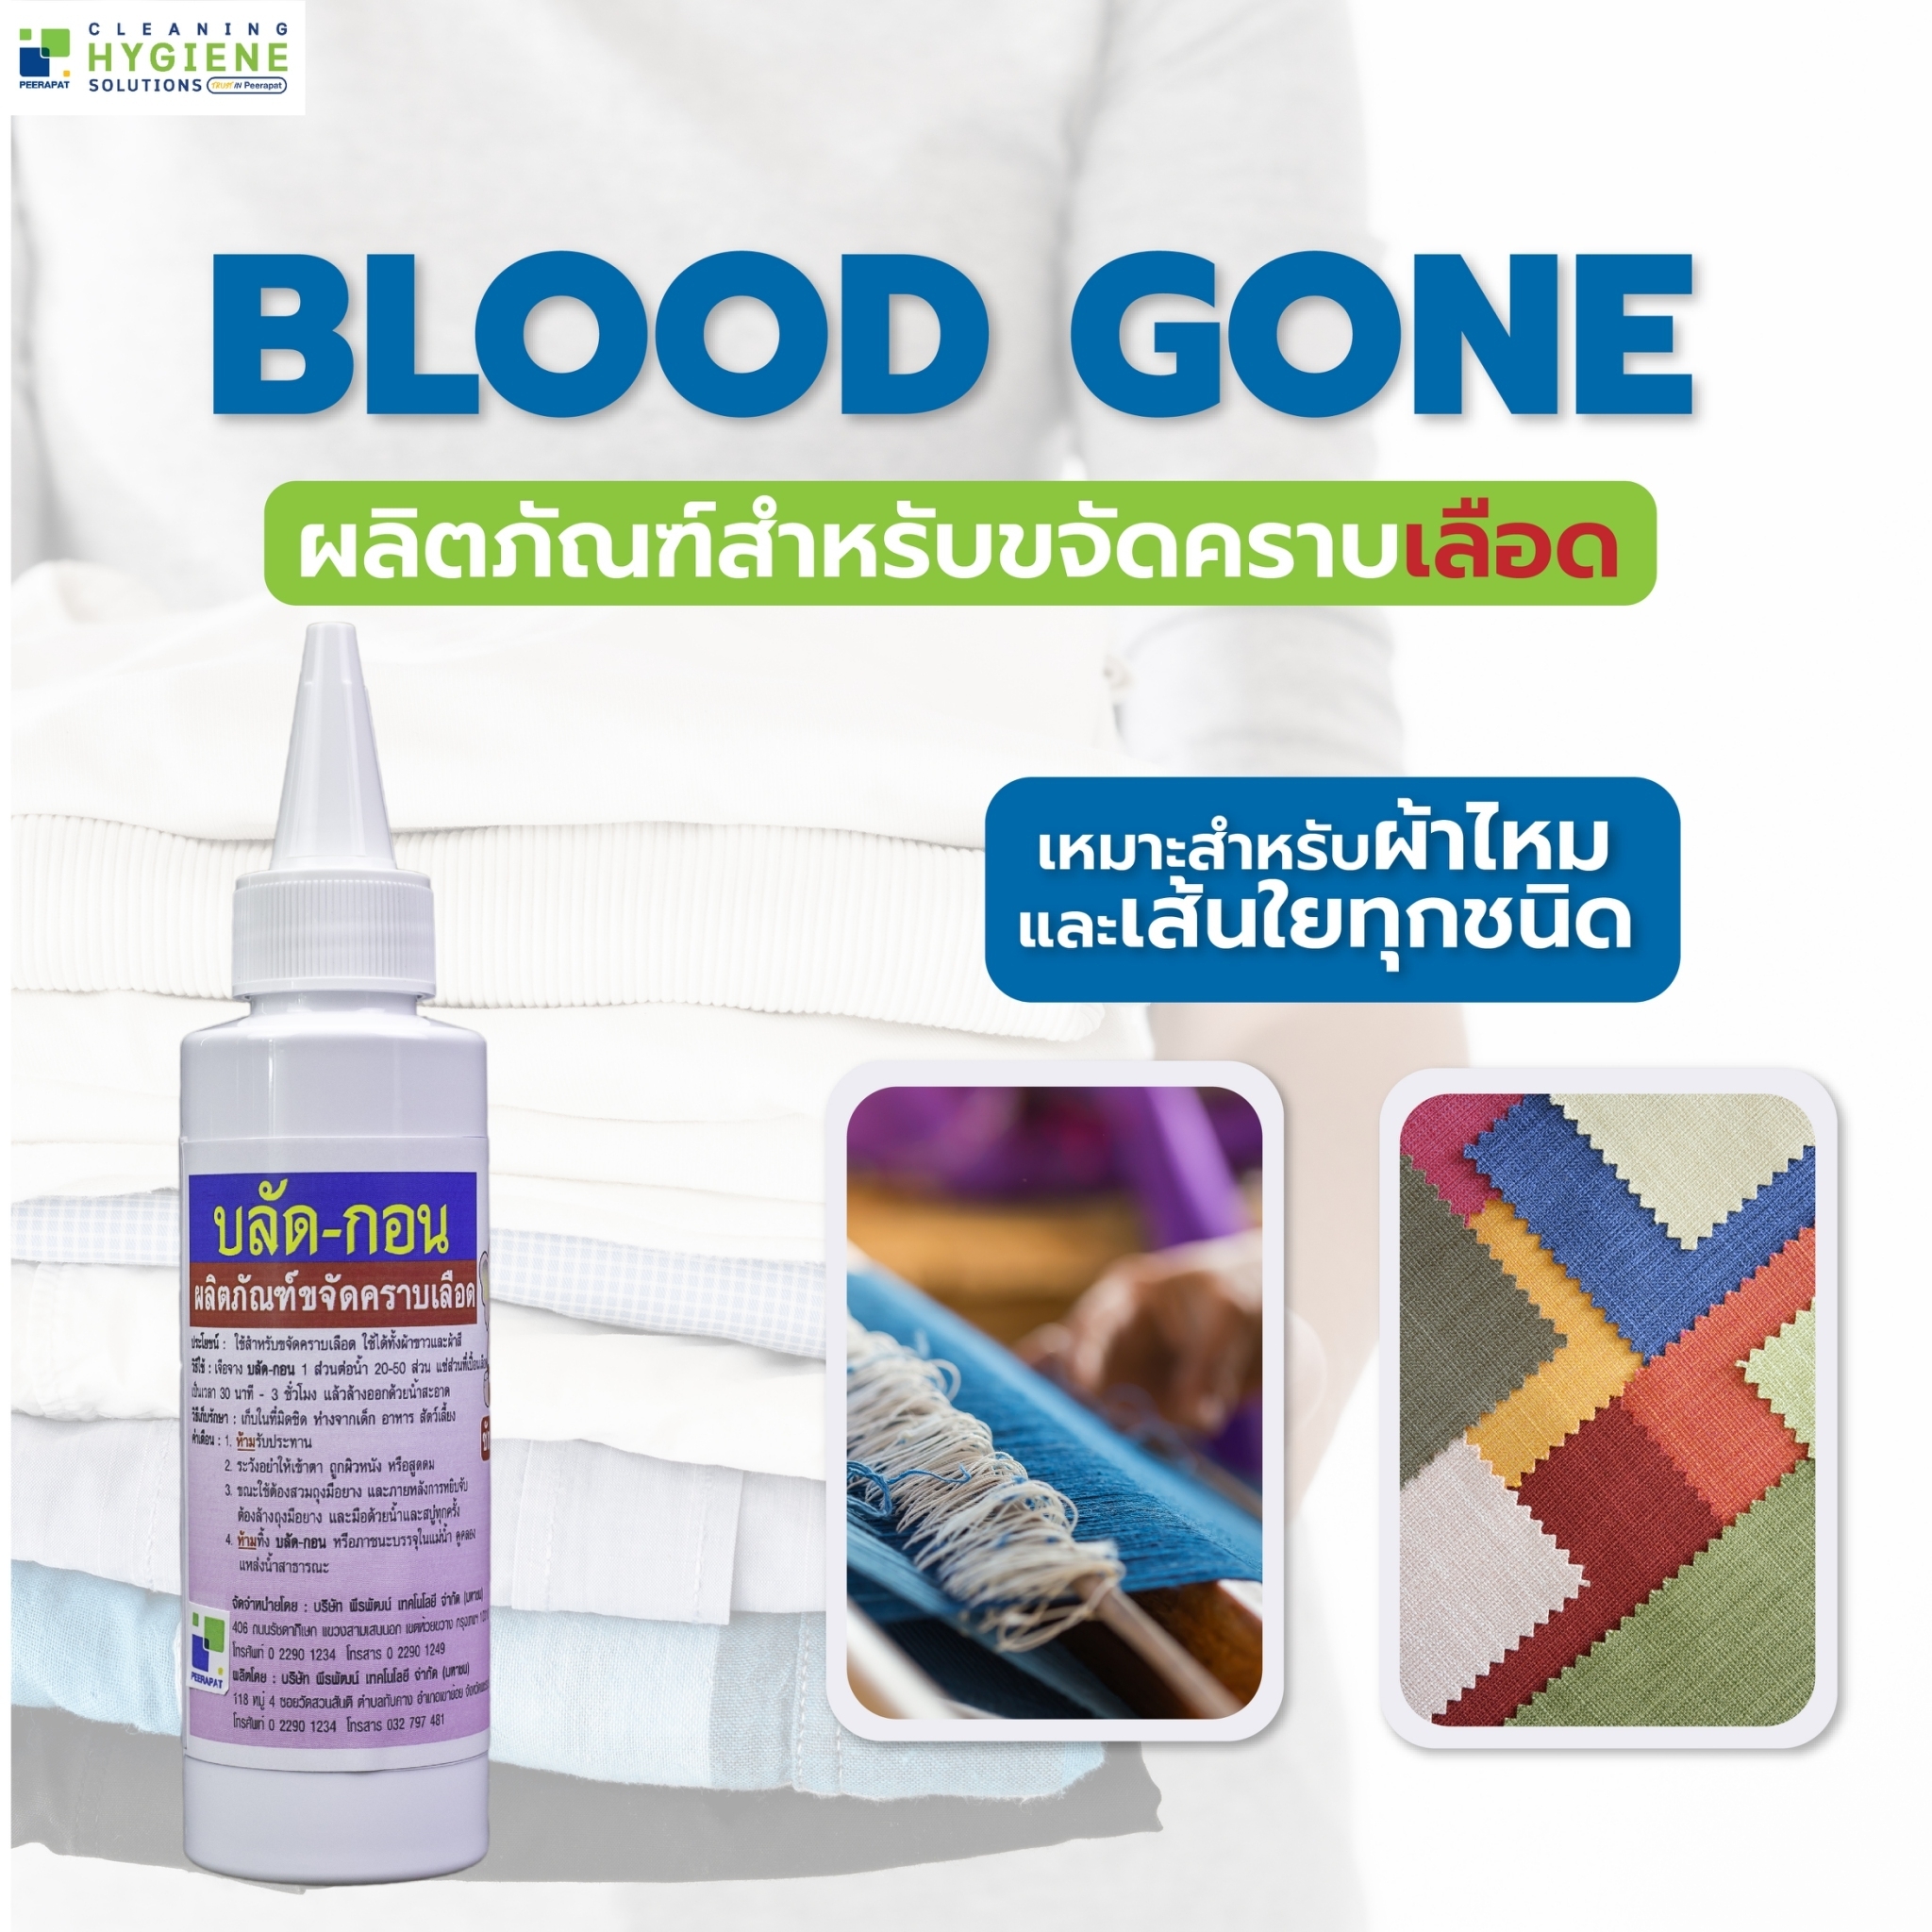 Blood Gone บลัดกอน น้ำยาขจัดคราบเลือด ที่เปื้อนบนผ้า ถนอมเส้นใยผ้า